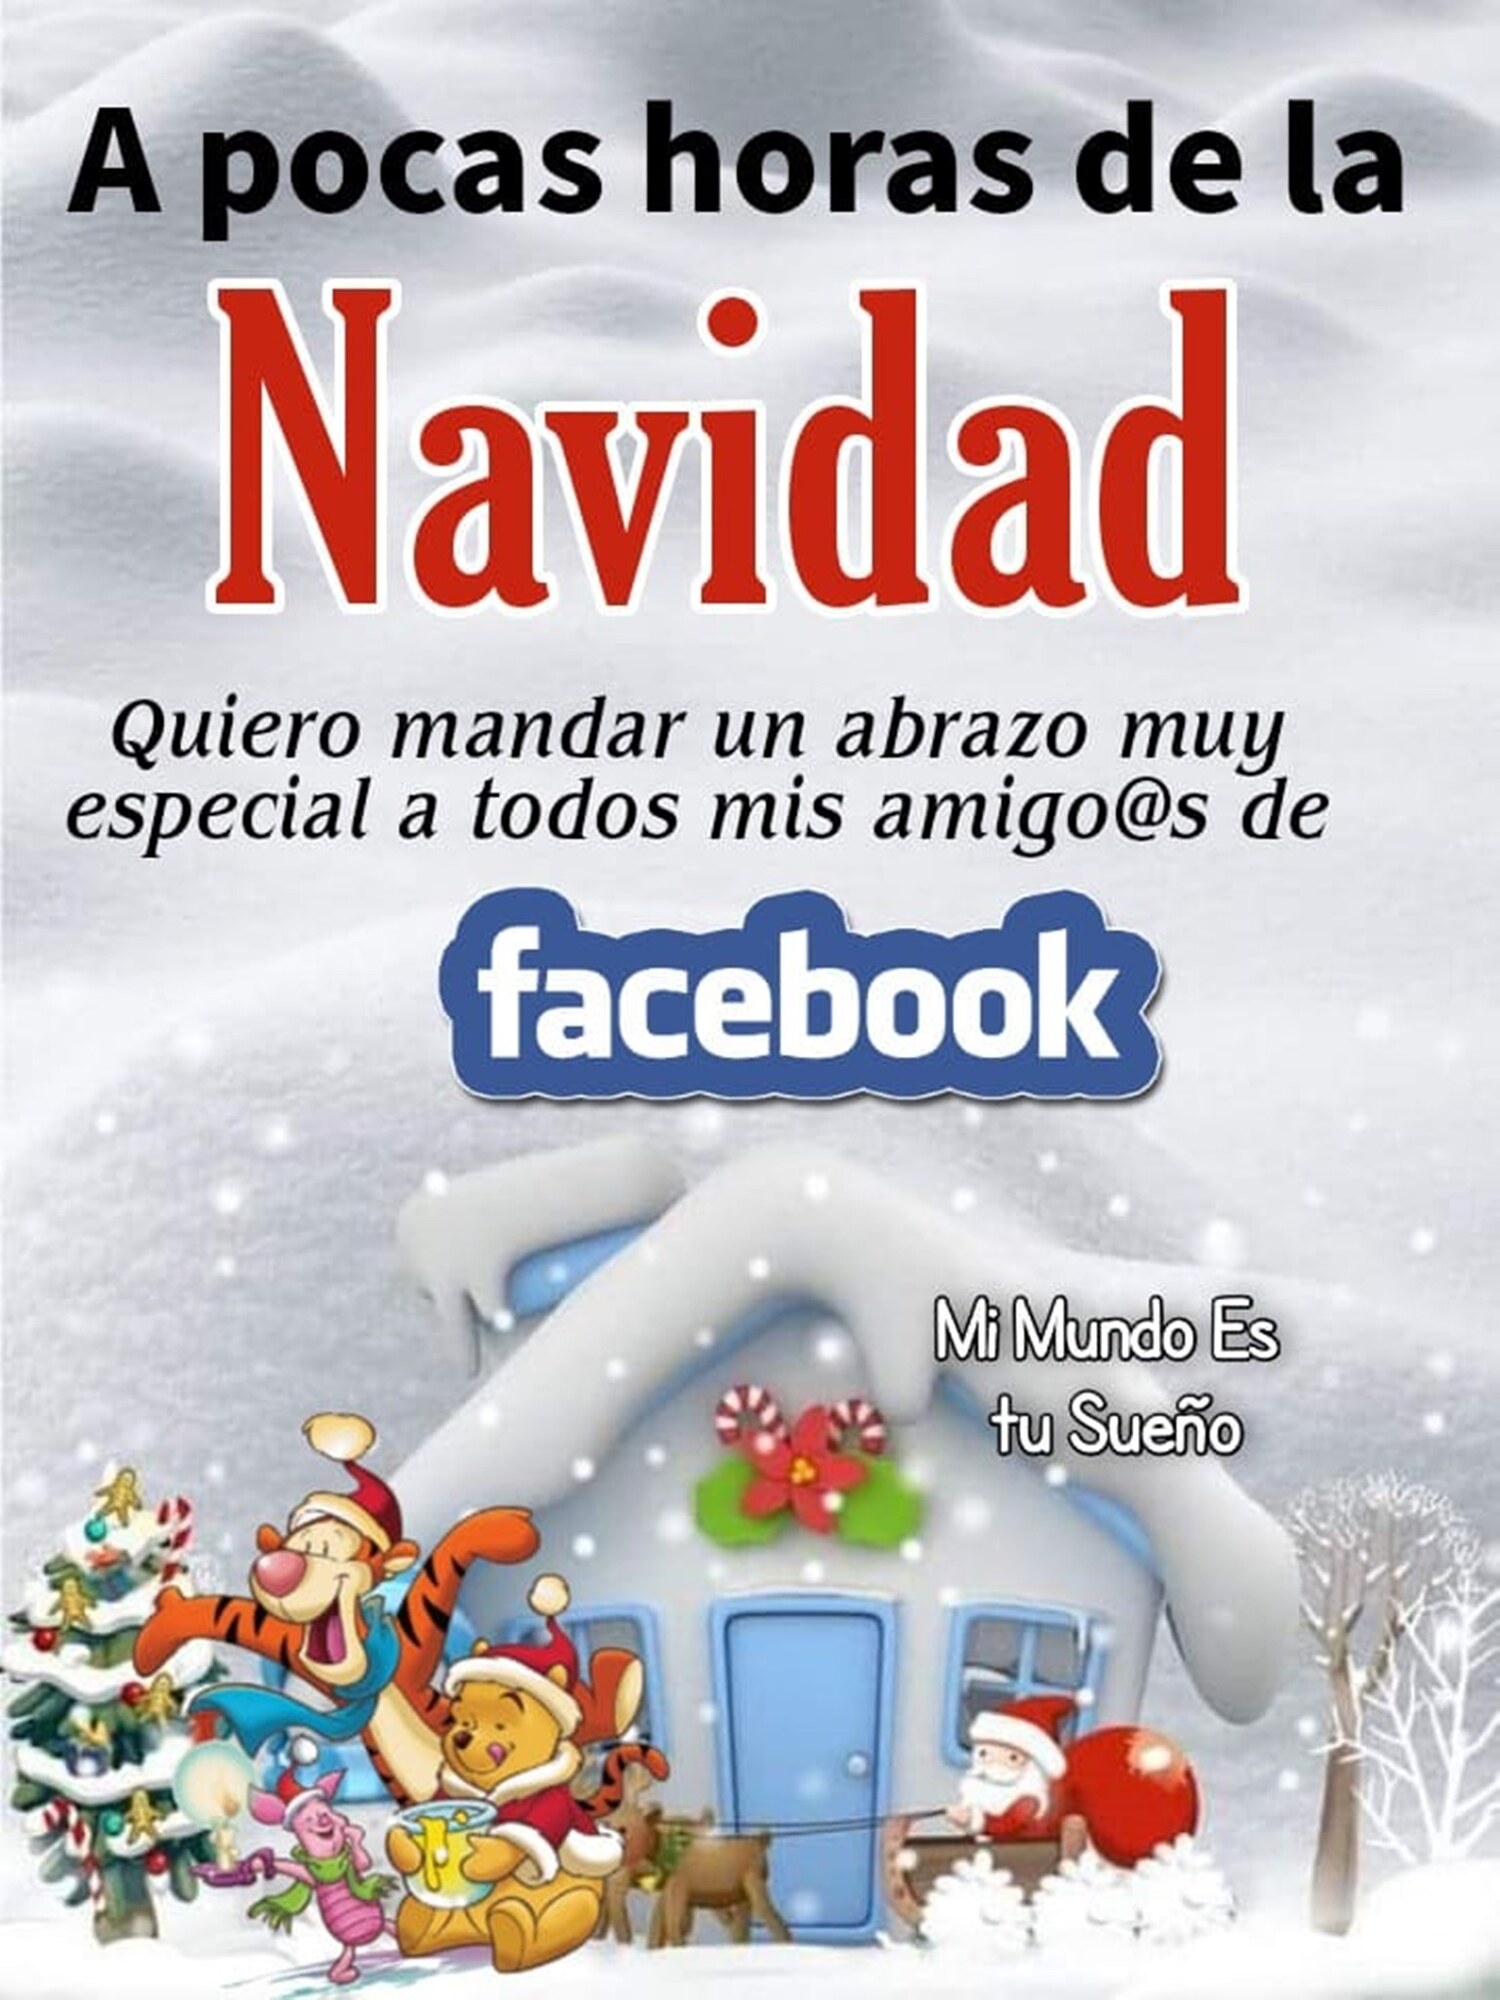 A pocas horas de la Navidad quiero mandar un abrazo muy especial a todos mis amigos de facebook